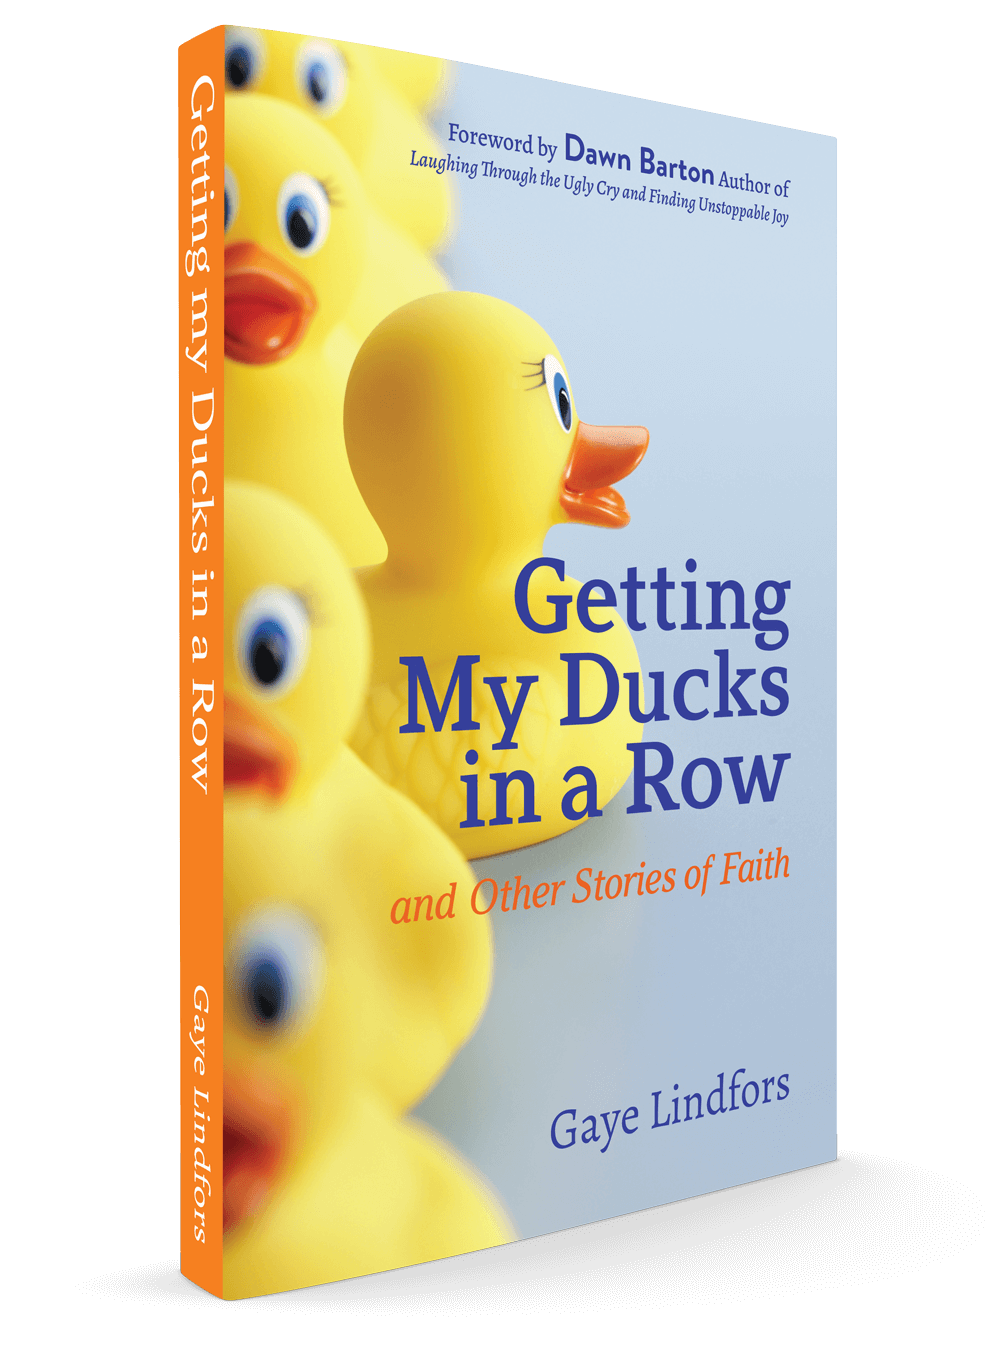 Ducks-in-a-row-book